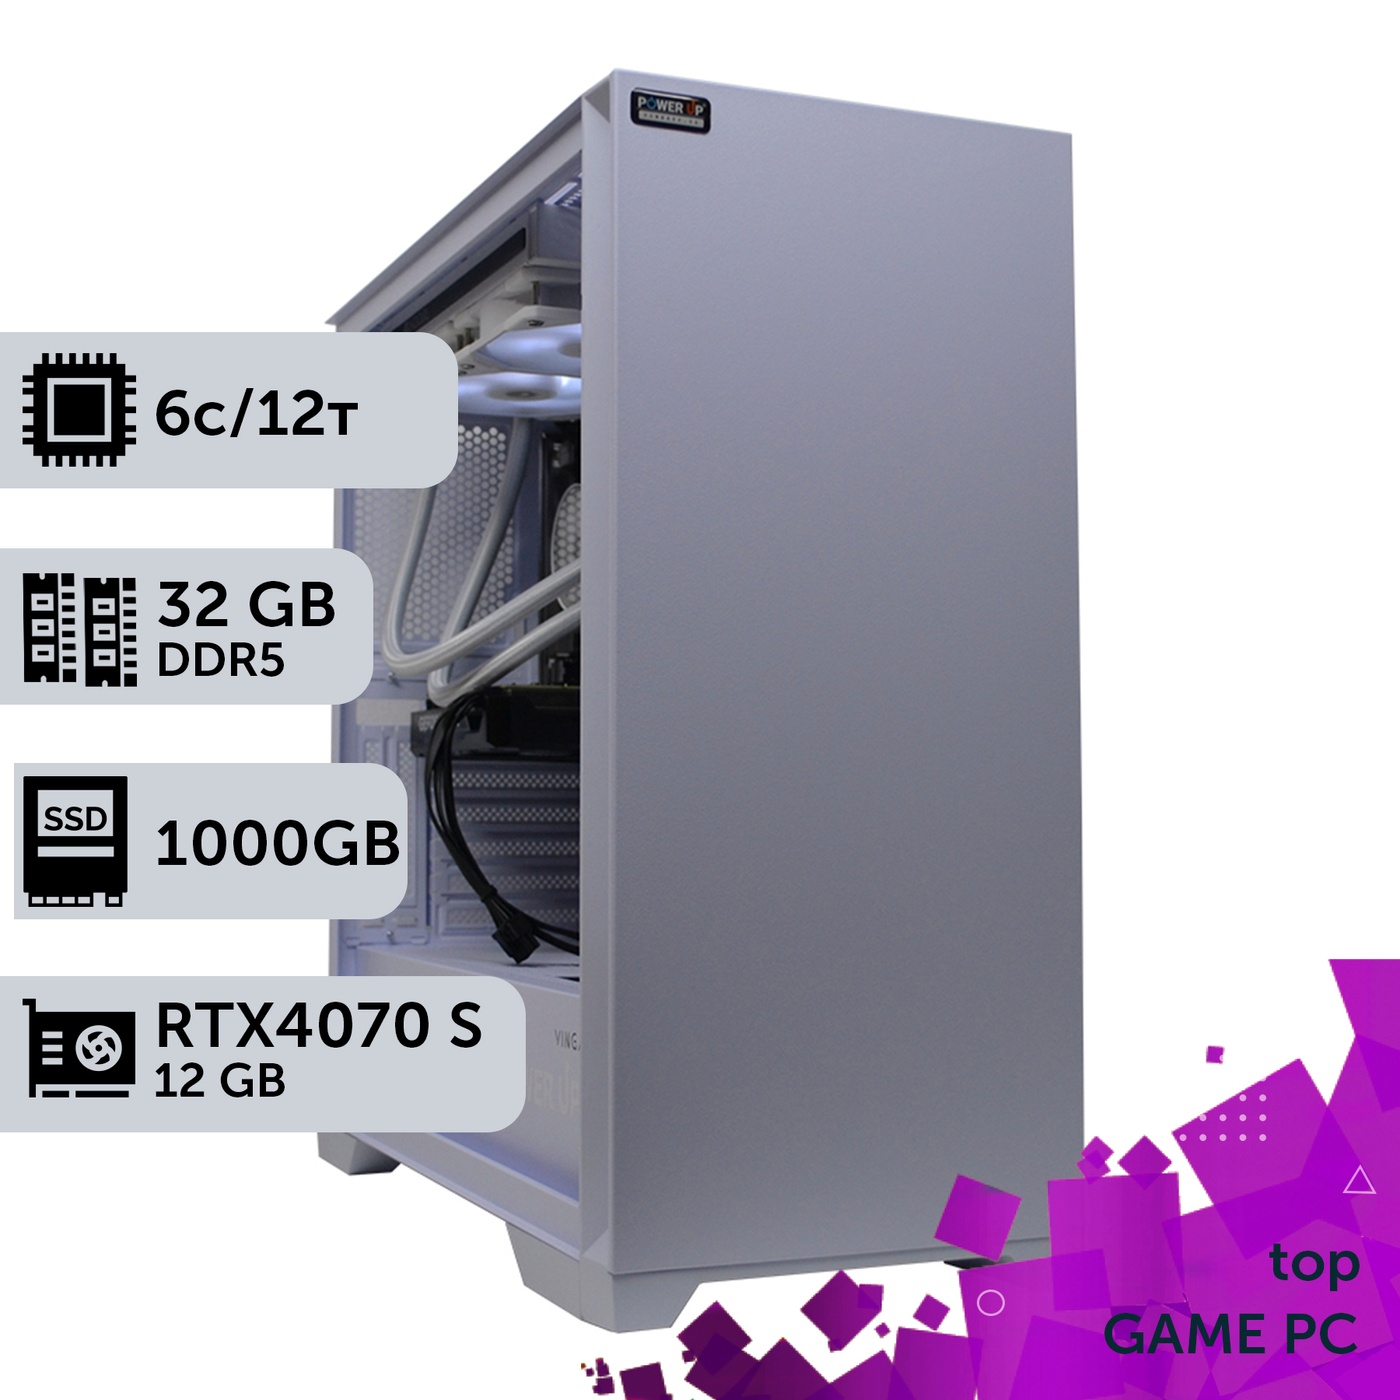 Ігровий комп'ютер GamePC TOP #362 Ryzen 5 7600/32 GB/SSD 1TB/GeForce RTX 4070 Super 12GB